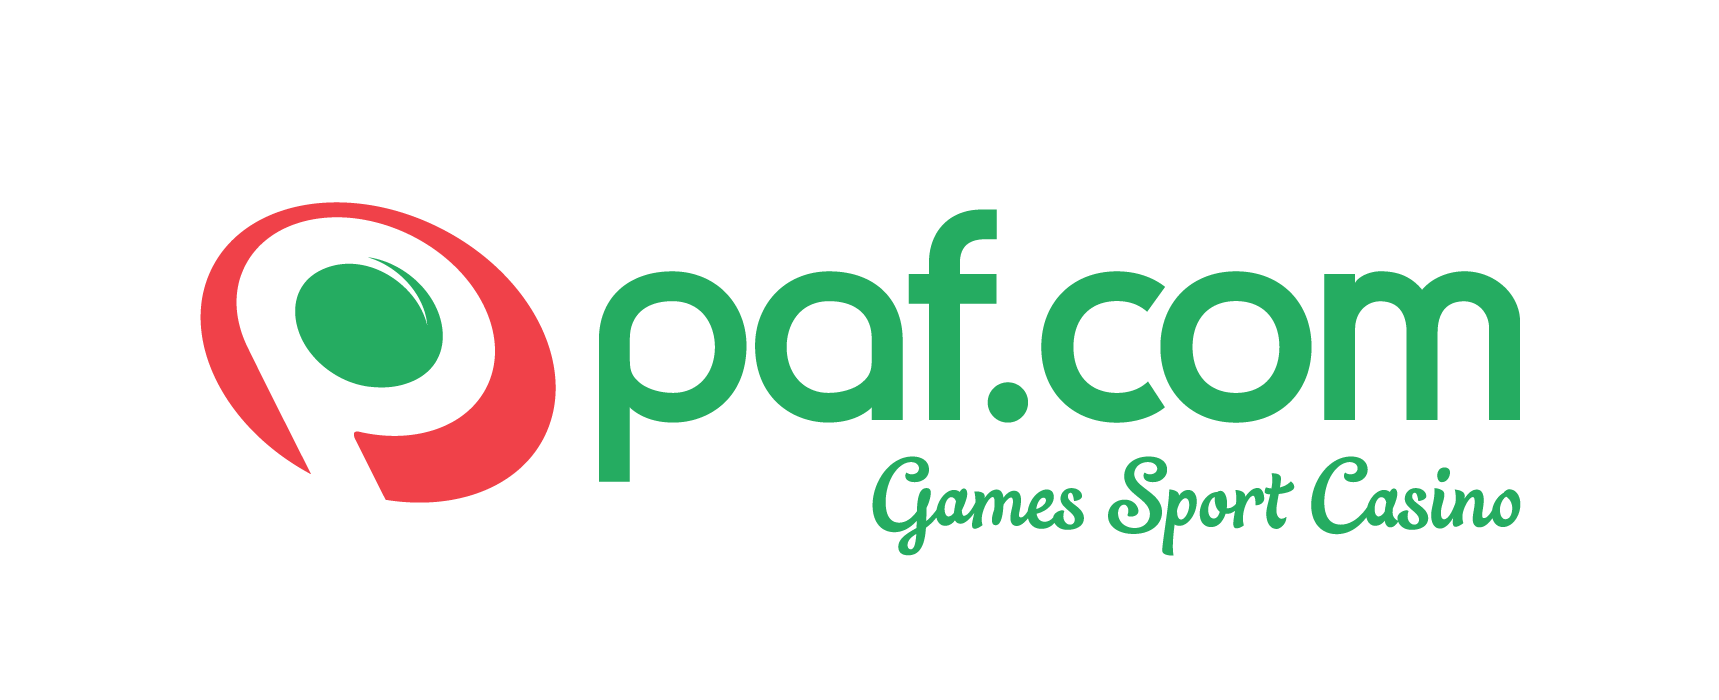 PAF Logo - Paf logo new.png